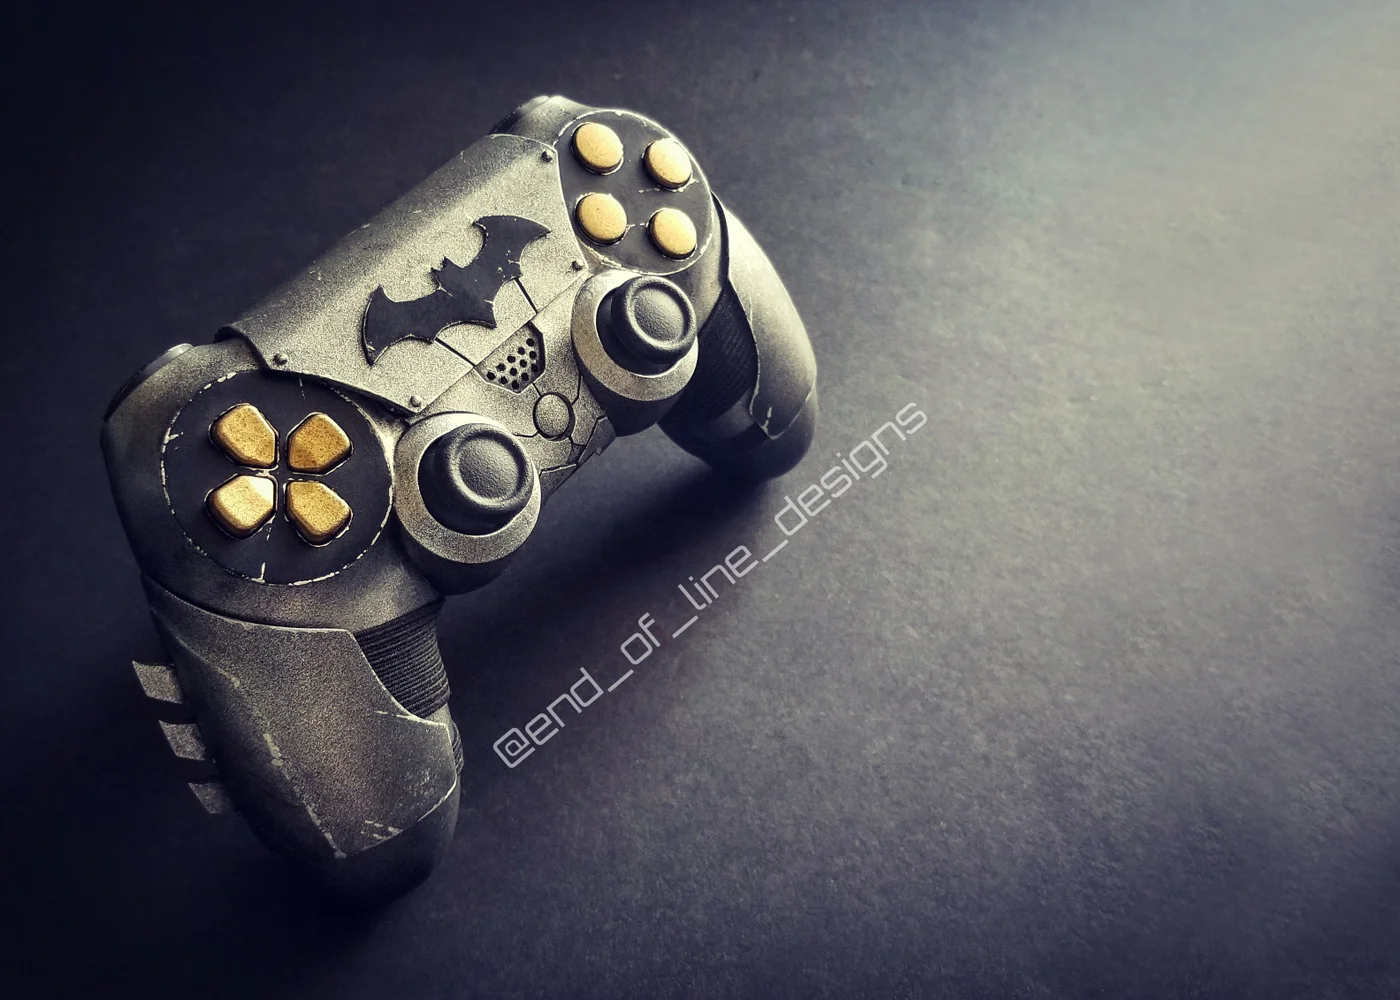 Взгляните на потрясающий контроллер для PS4 в стиле Бэтмена, сделанный вручную - фото 1